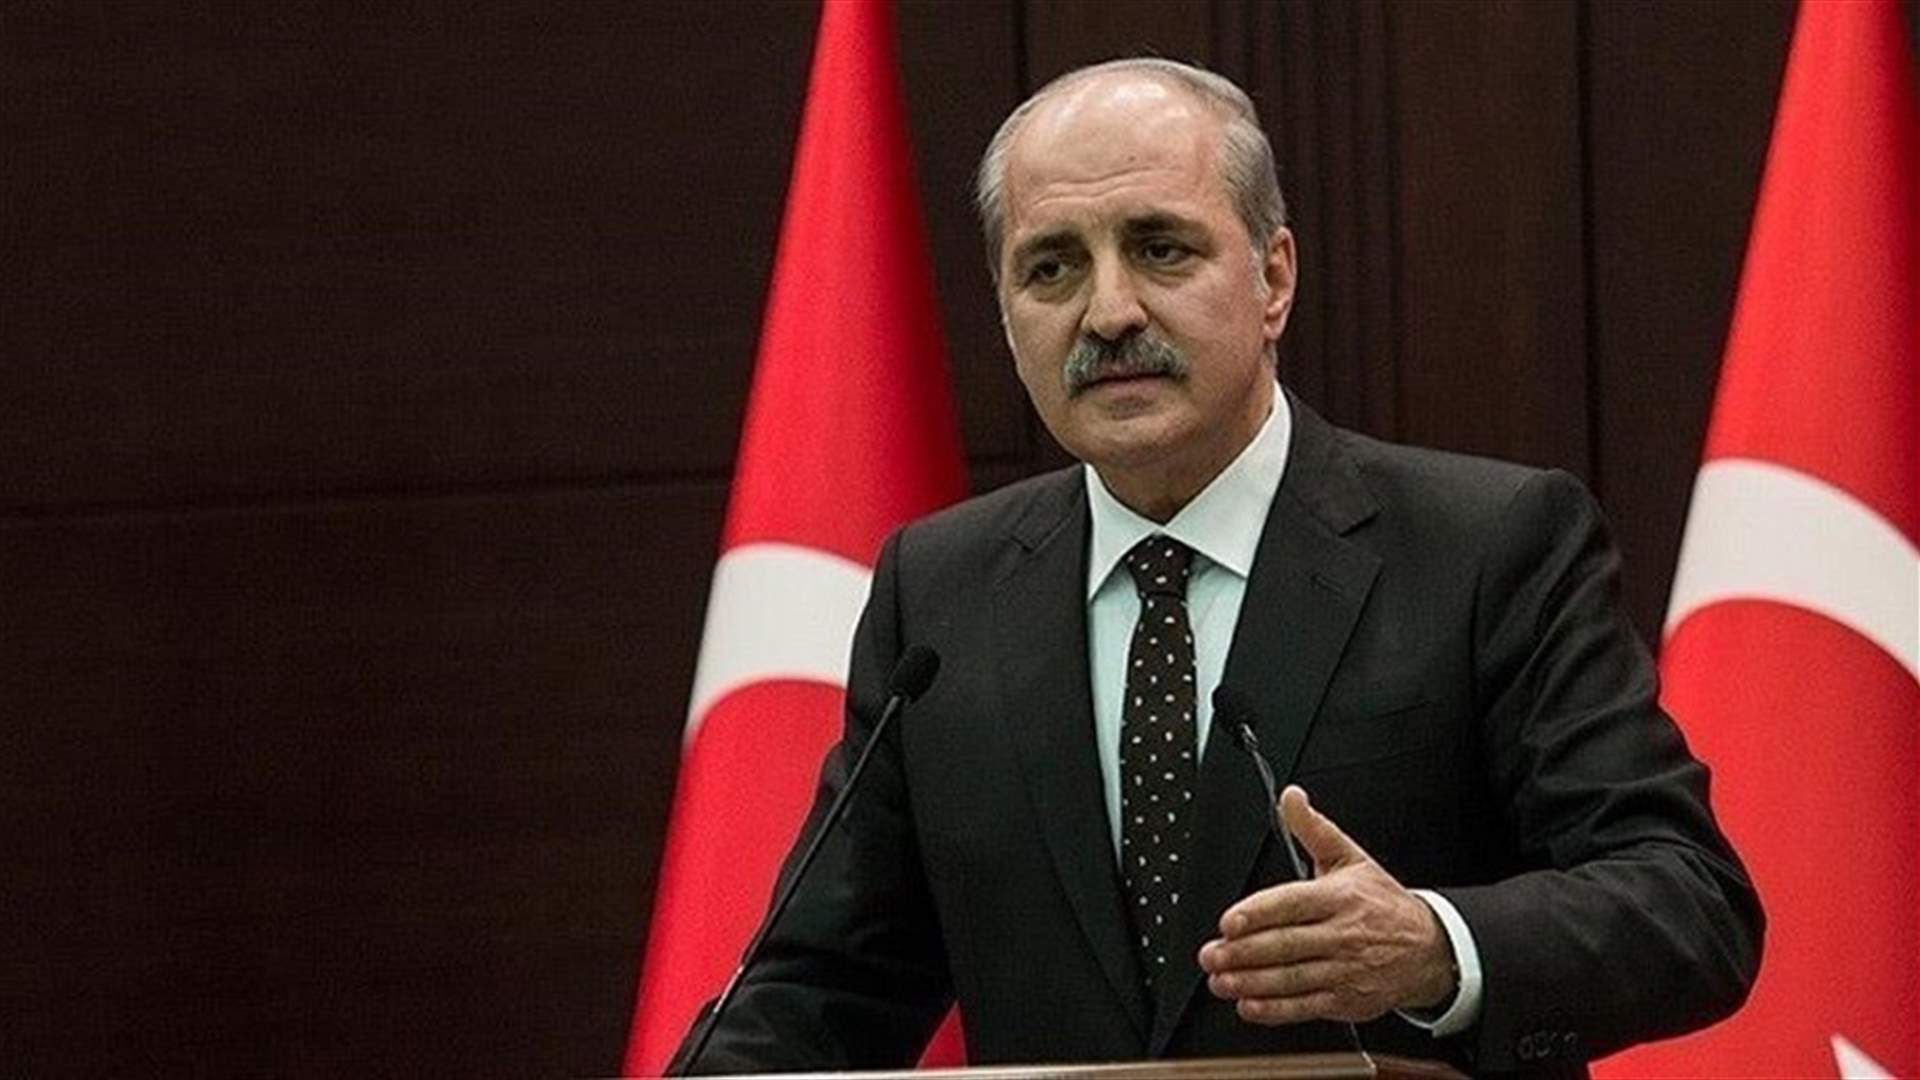  تركيا تريد أن تبدأ عملية الرقة بعد اكتمال عمليتي الموصل ودرع الفرات